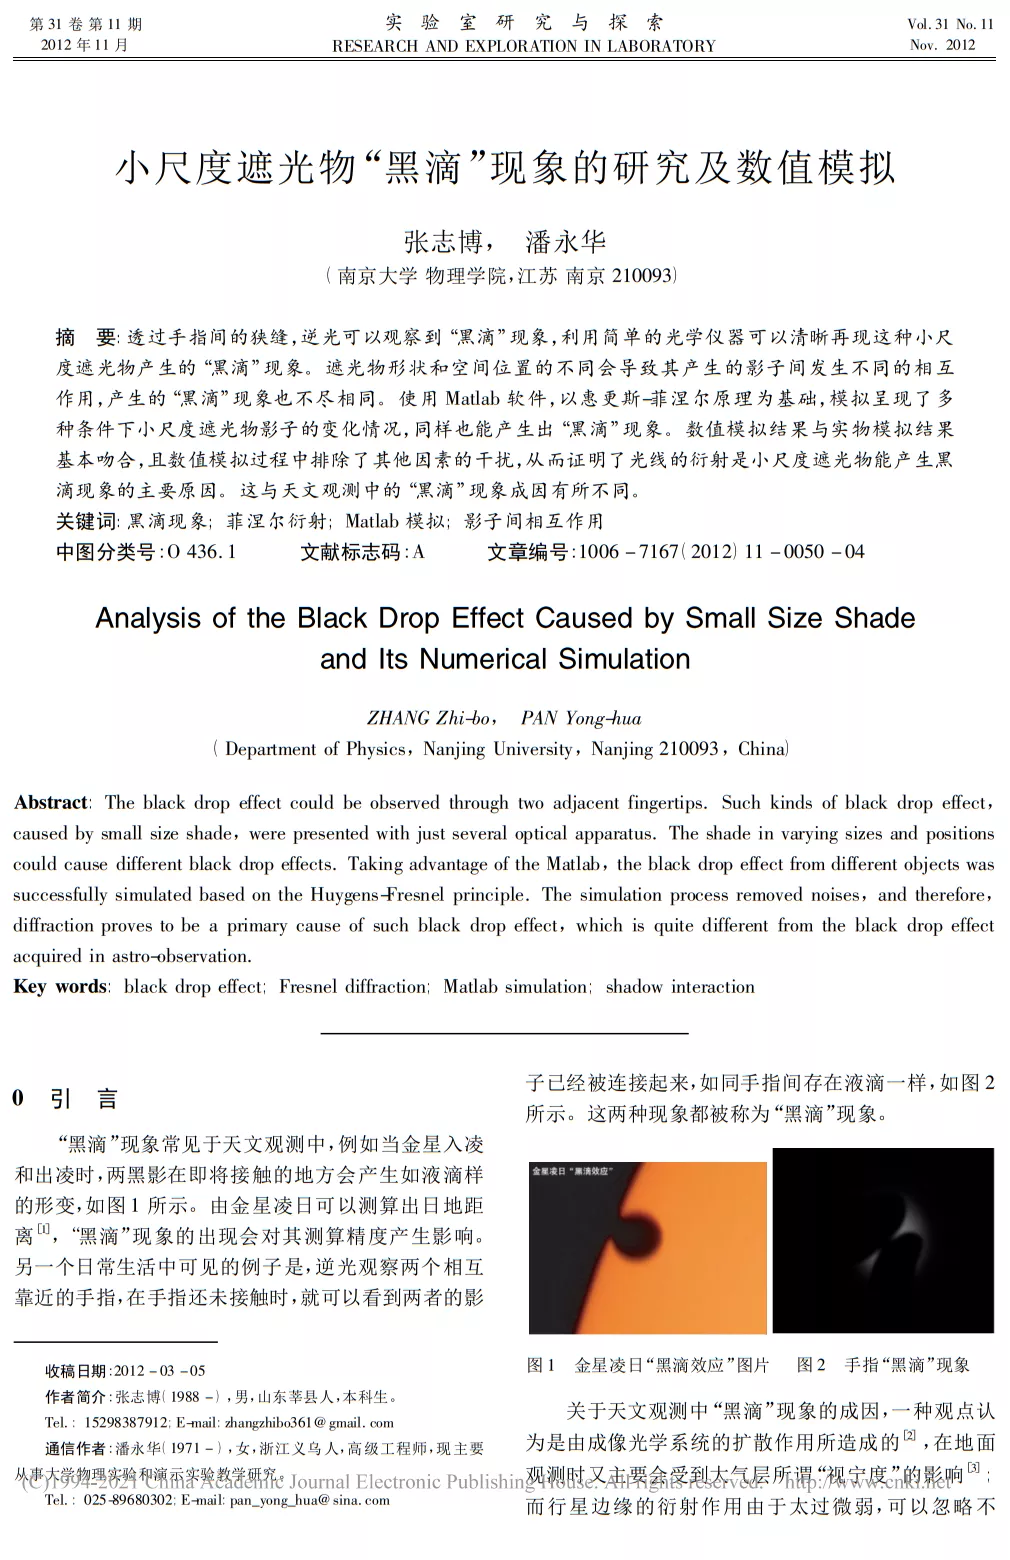 小尺度下遮光物“黑滴”现象的研究及数值模拟